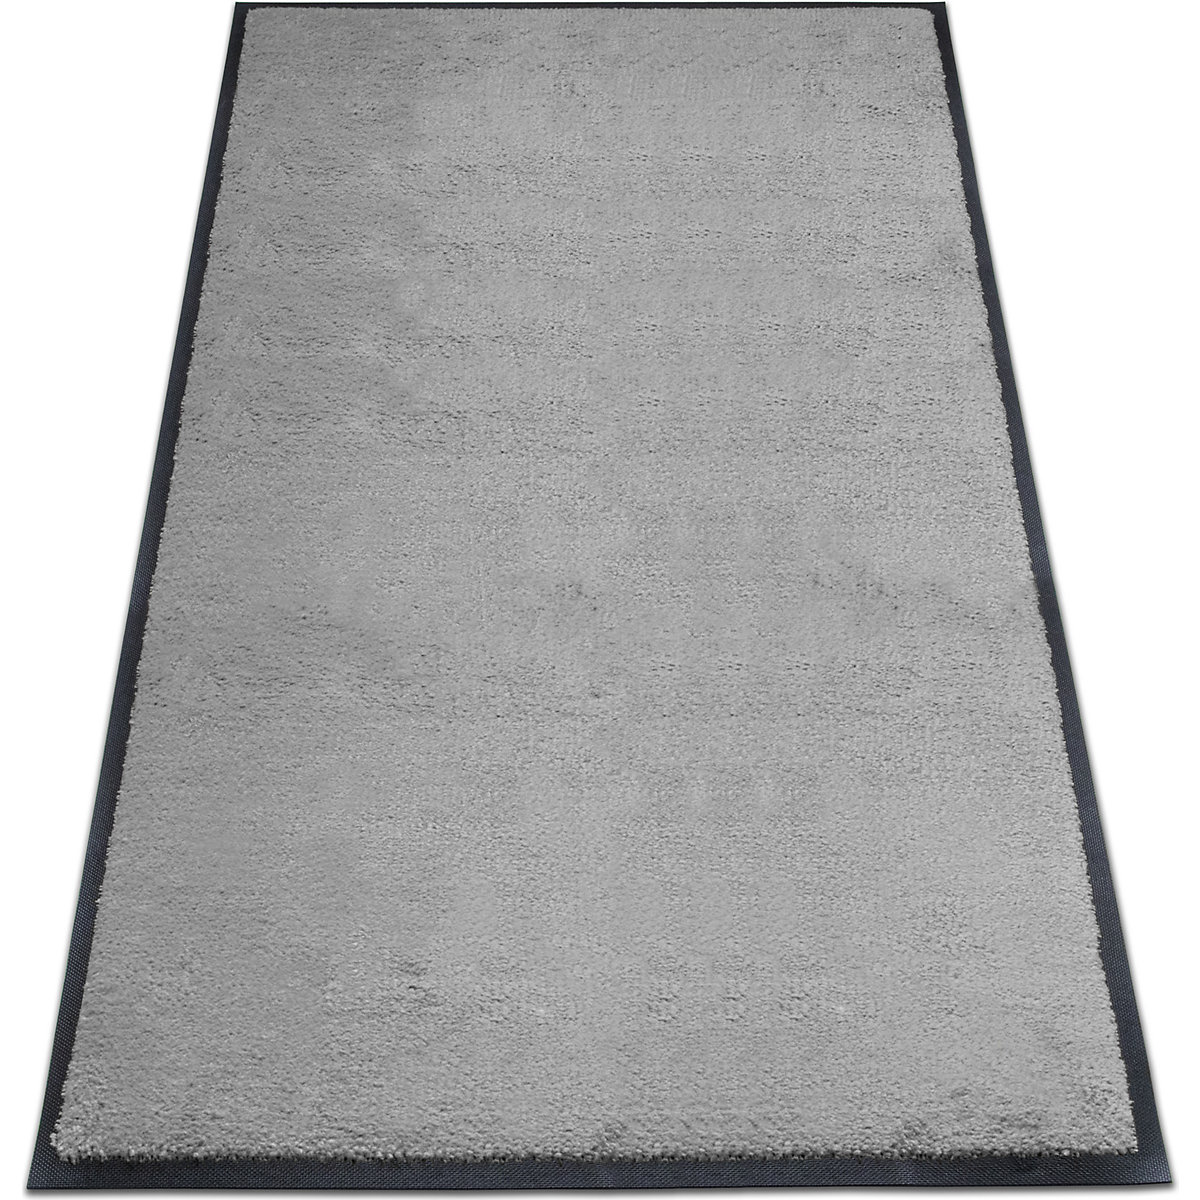 Tapis de propreté EAZYCARE STYLE, L x l 1500 x 850 mm, gris basalte